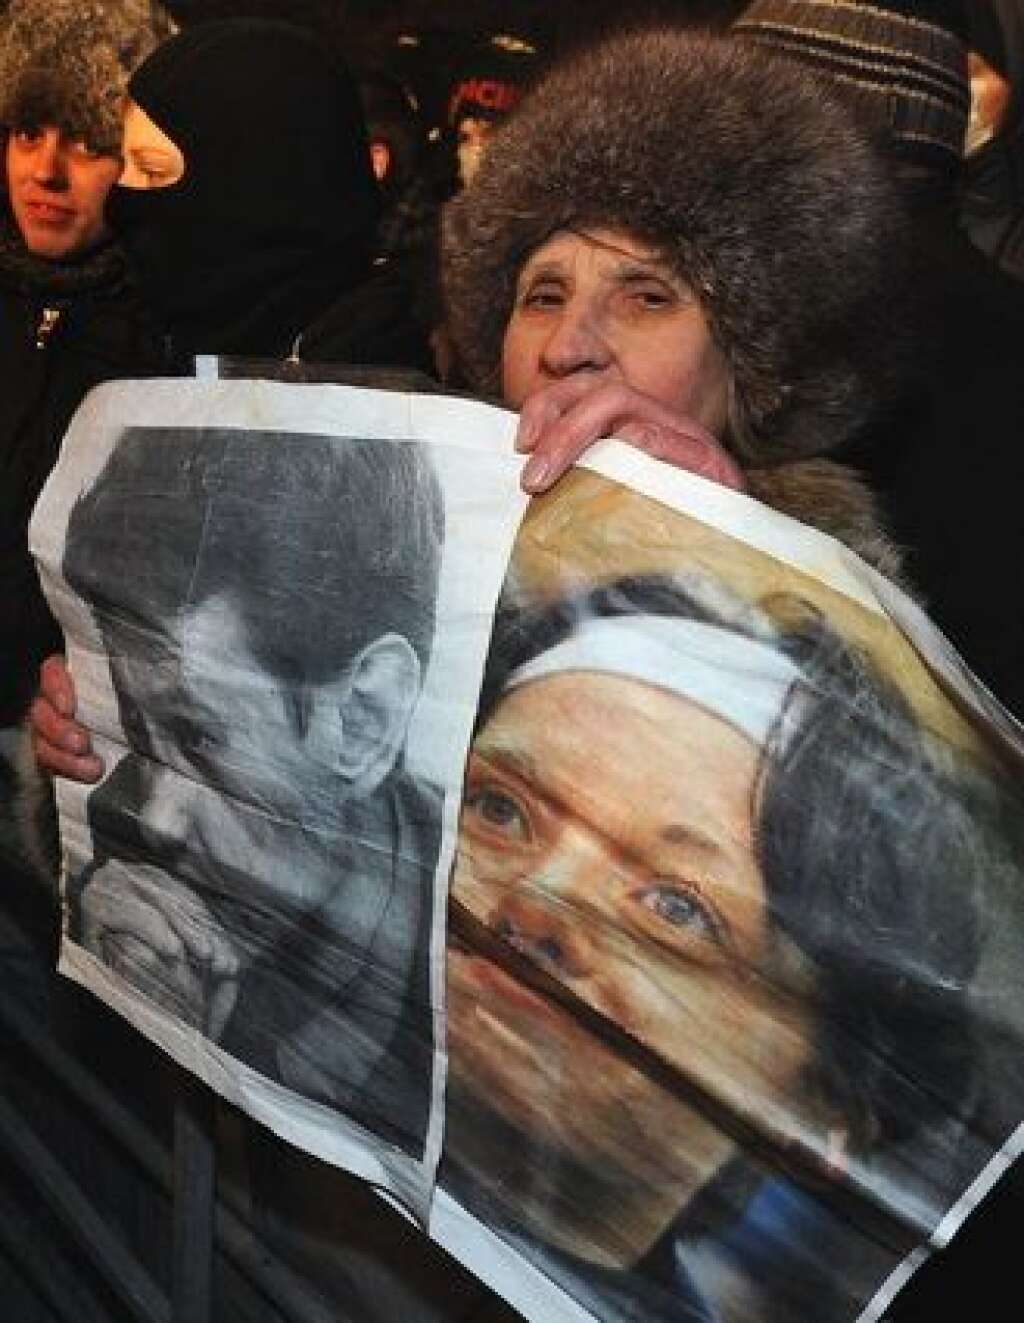 19 janvier 2009 - Stanislas Markelov et Anastassia Babourova - L'avocat spécialiste des droits de l'homme Stanislas Markelov, 34 ans, et la journaliste d'opposition Anastassia Babourova, 25 ans, tués par balle en pleine rue à Moscou alors qu'ils sortaient d'une conférence de presse.